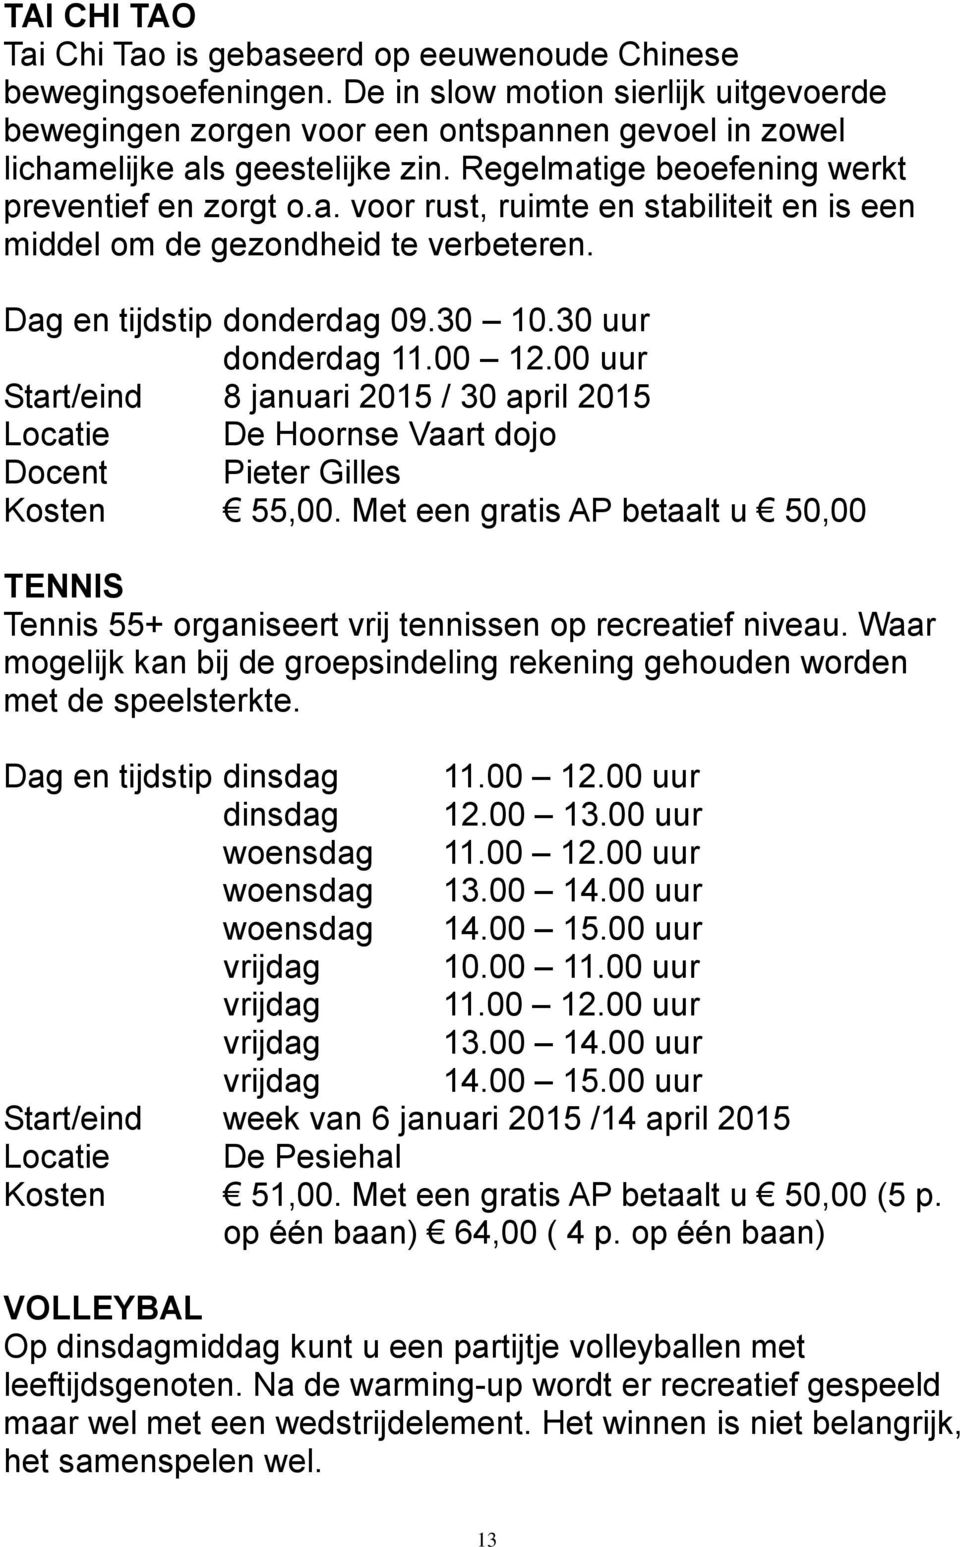 Dag en tijdstip donderdag 09.30 10.30 uur donderdag 11.00 12.00 uur Start/eind 8 januari 2015 / 30 april 2015 Locatie De Hoornse Vaart dojo Docent Pieter Gilles Kosten 55,00.